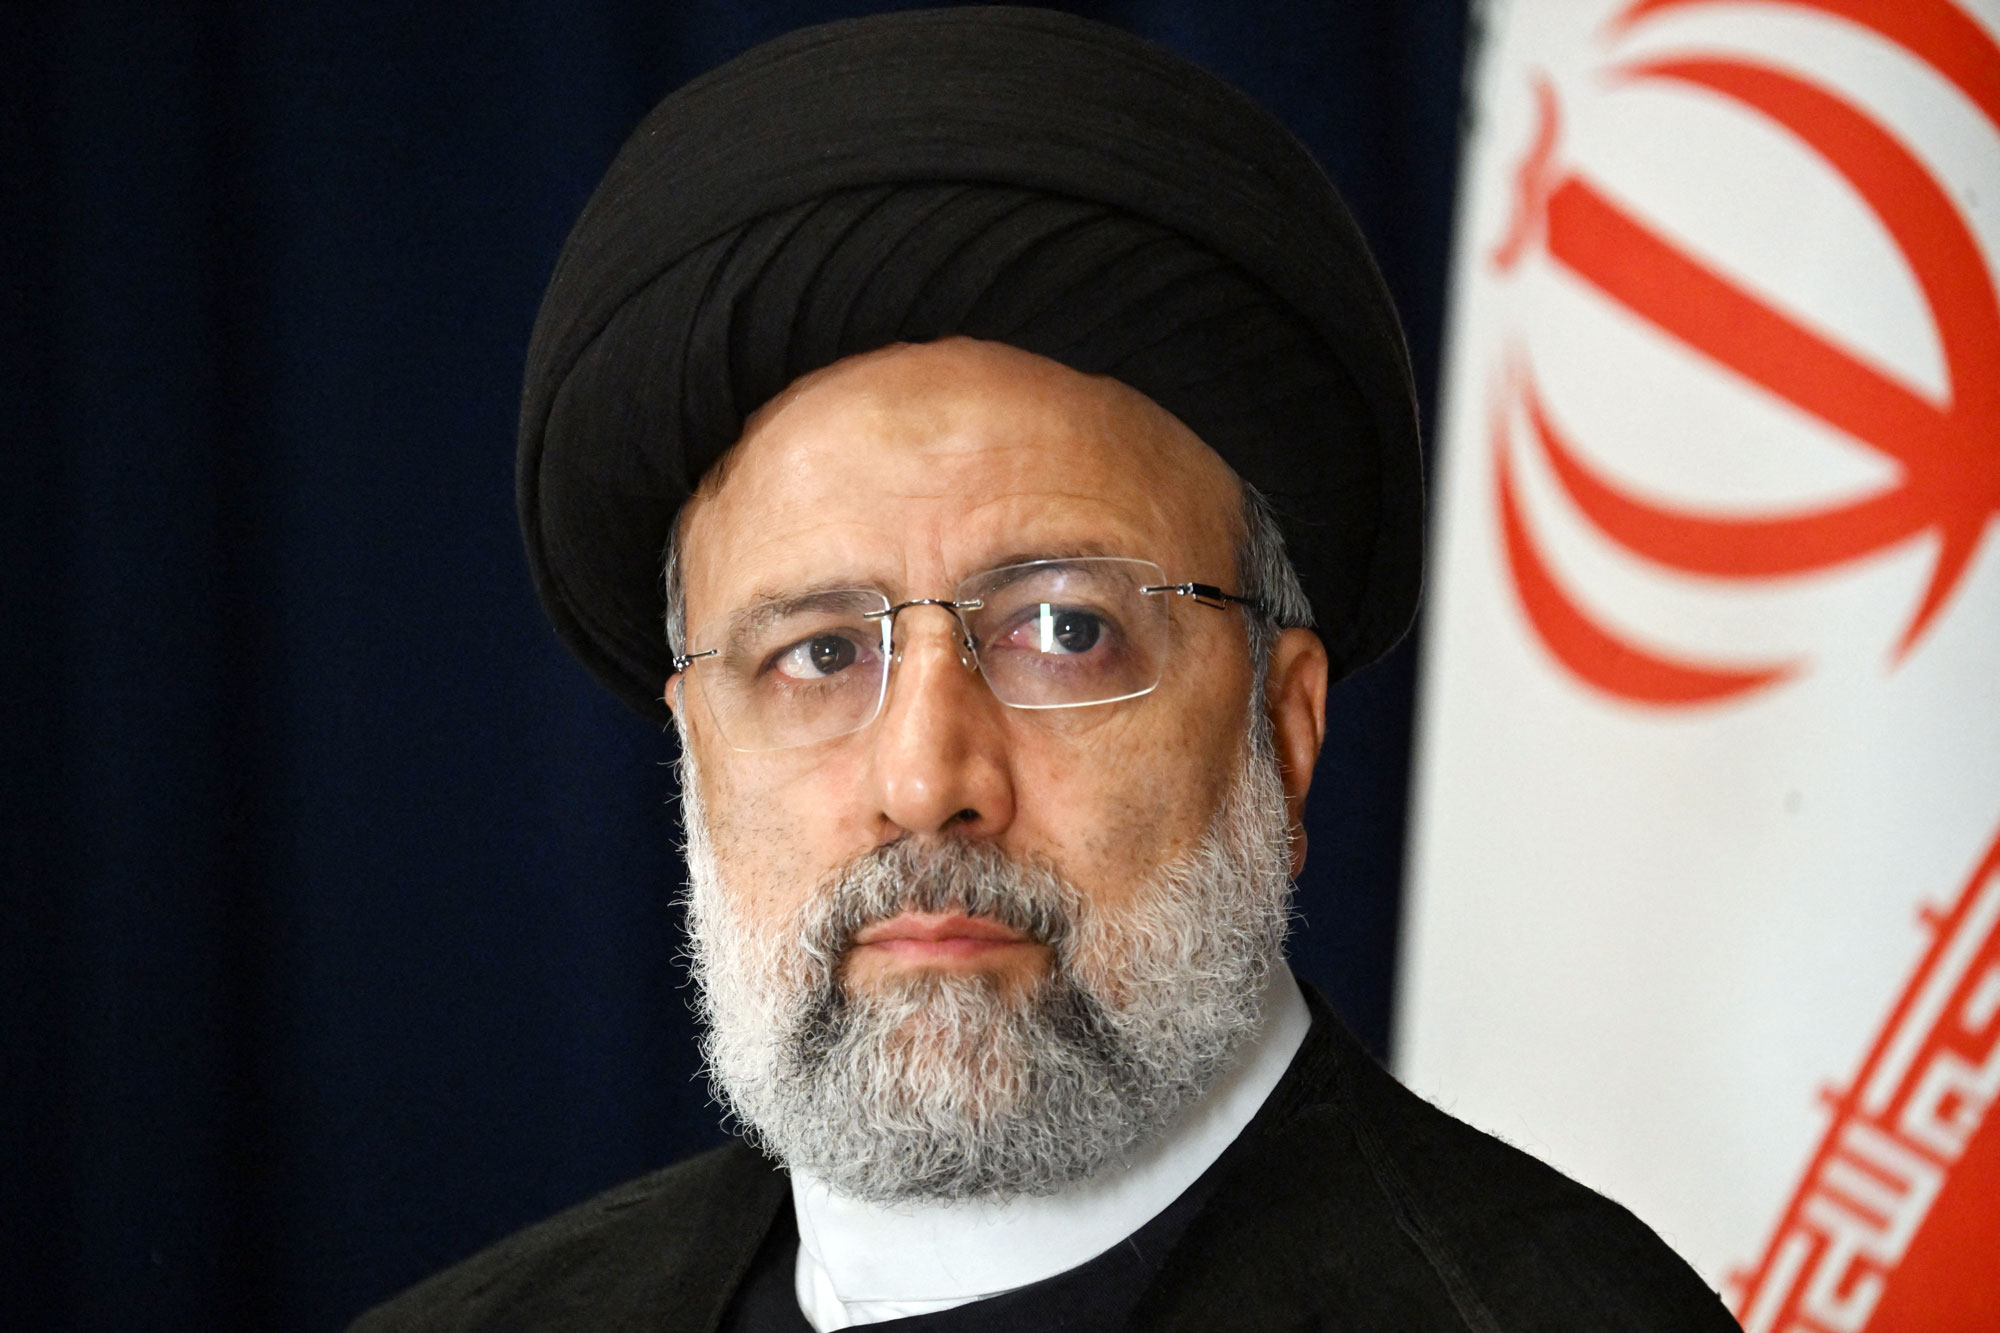 Presidente do Irã, Ebrahim Raisi, está desaparecido após queda de helicóptero